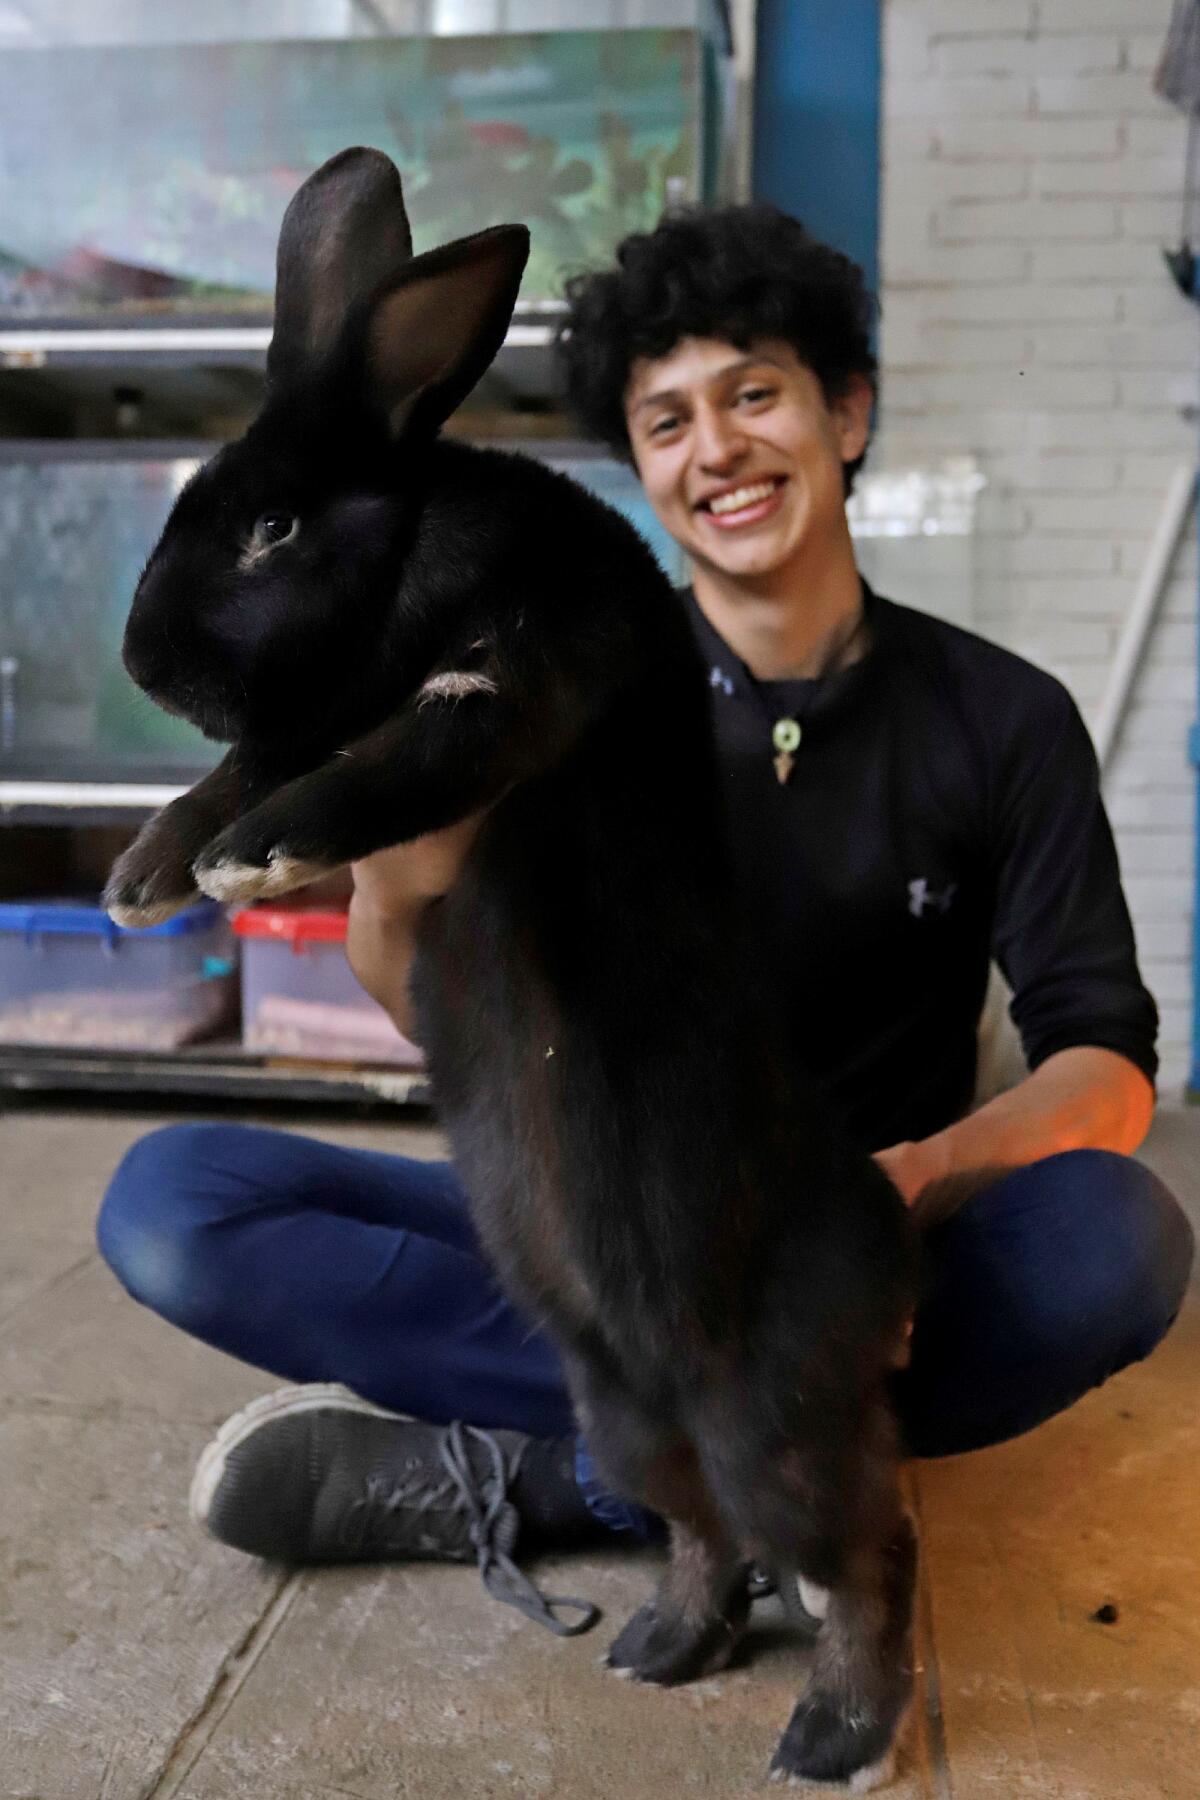 Fotografía que muestra al joven Kiro Yakin, mientras enseña una cría de conejo Flandes